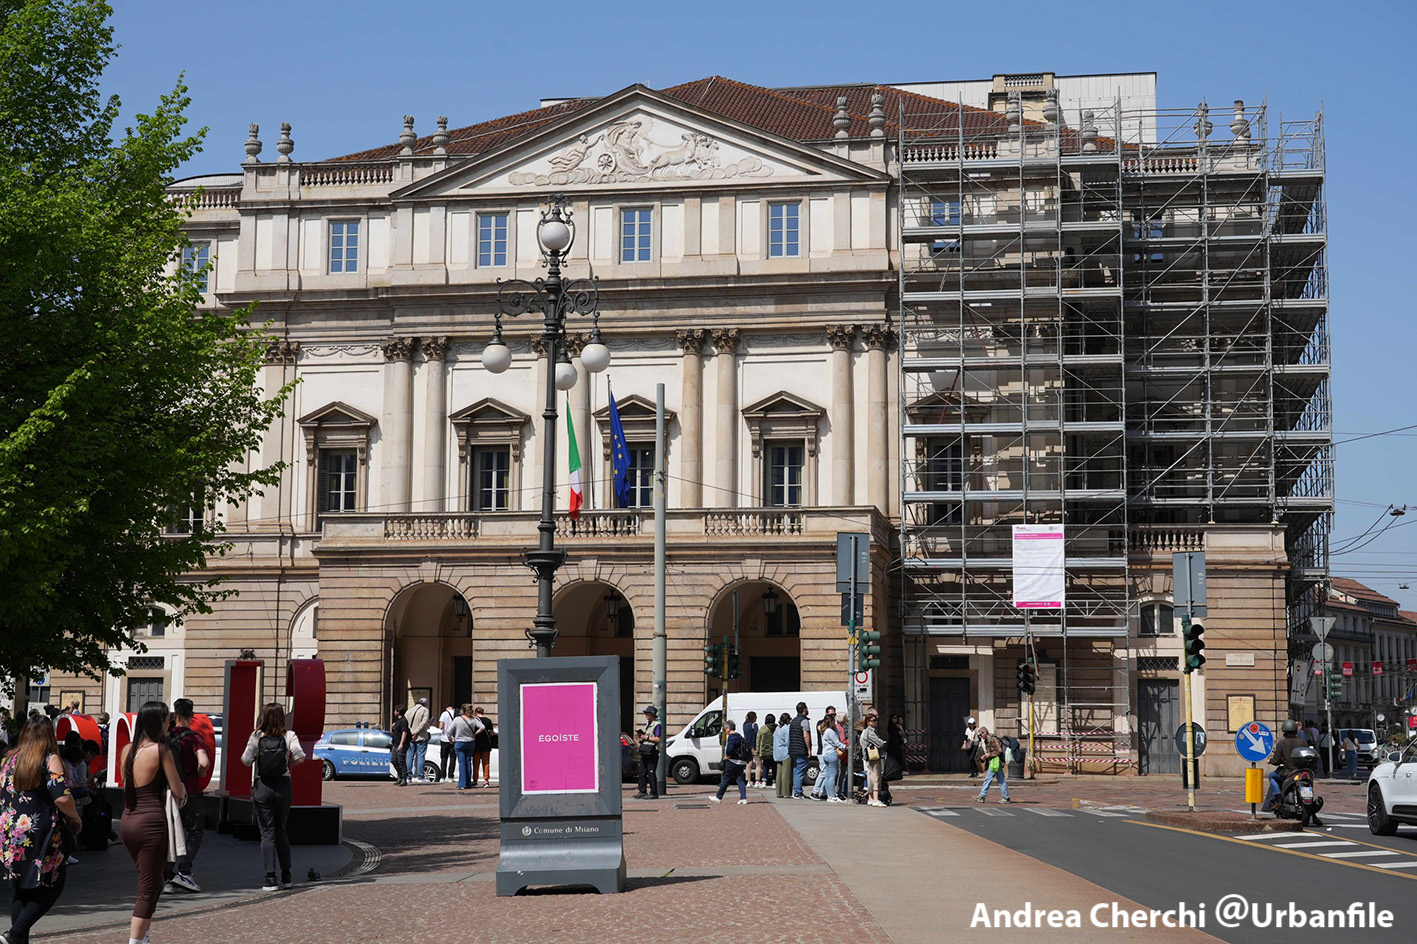 Milano | Centro Storico – I palazzi monumentali della città “impacchettati” per benino